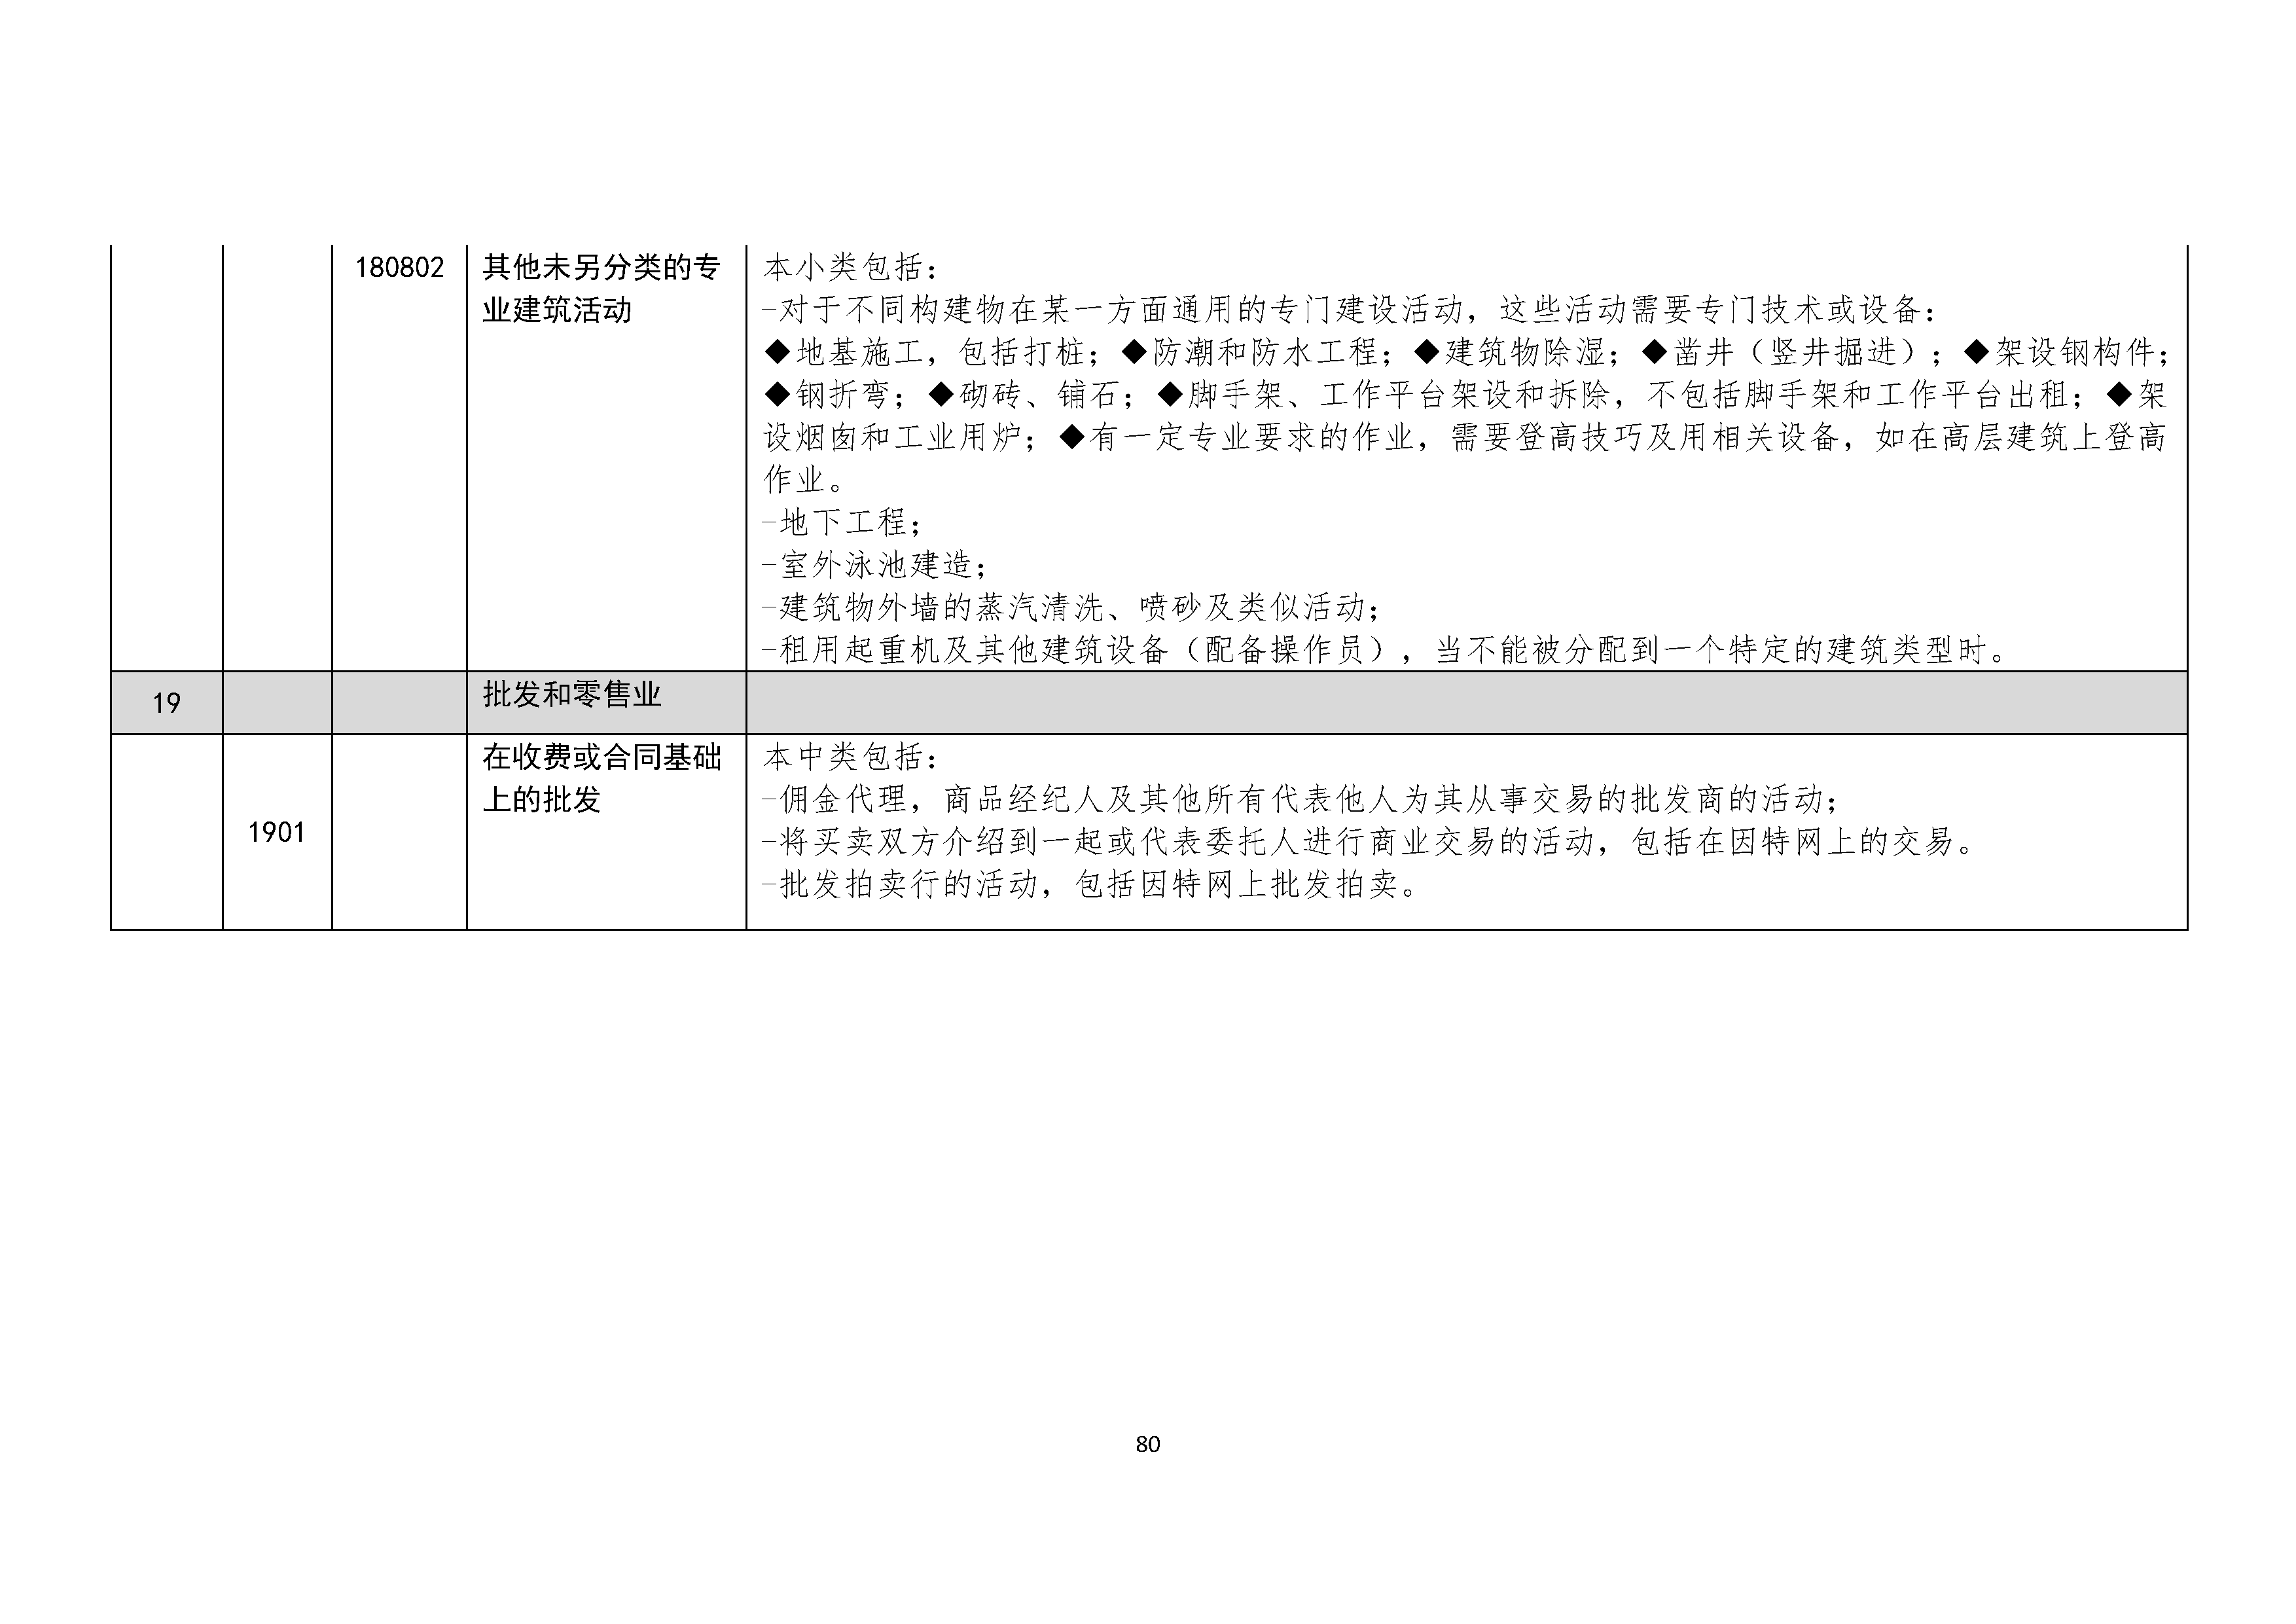 B.6《中国核能行业协会供应商评价供应商分类及产品专业范围划分规定》_页面_081.png